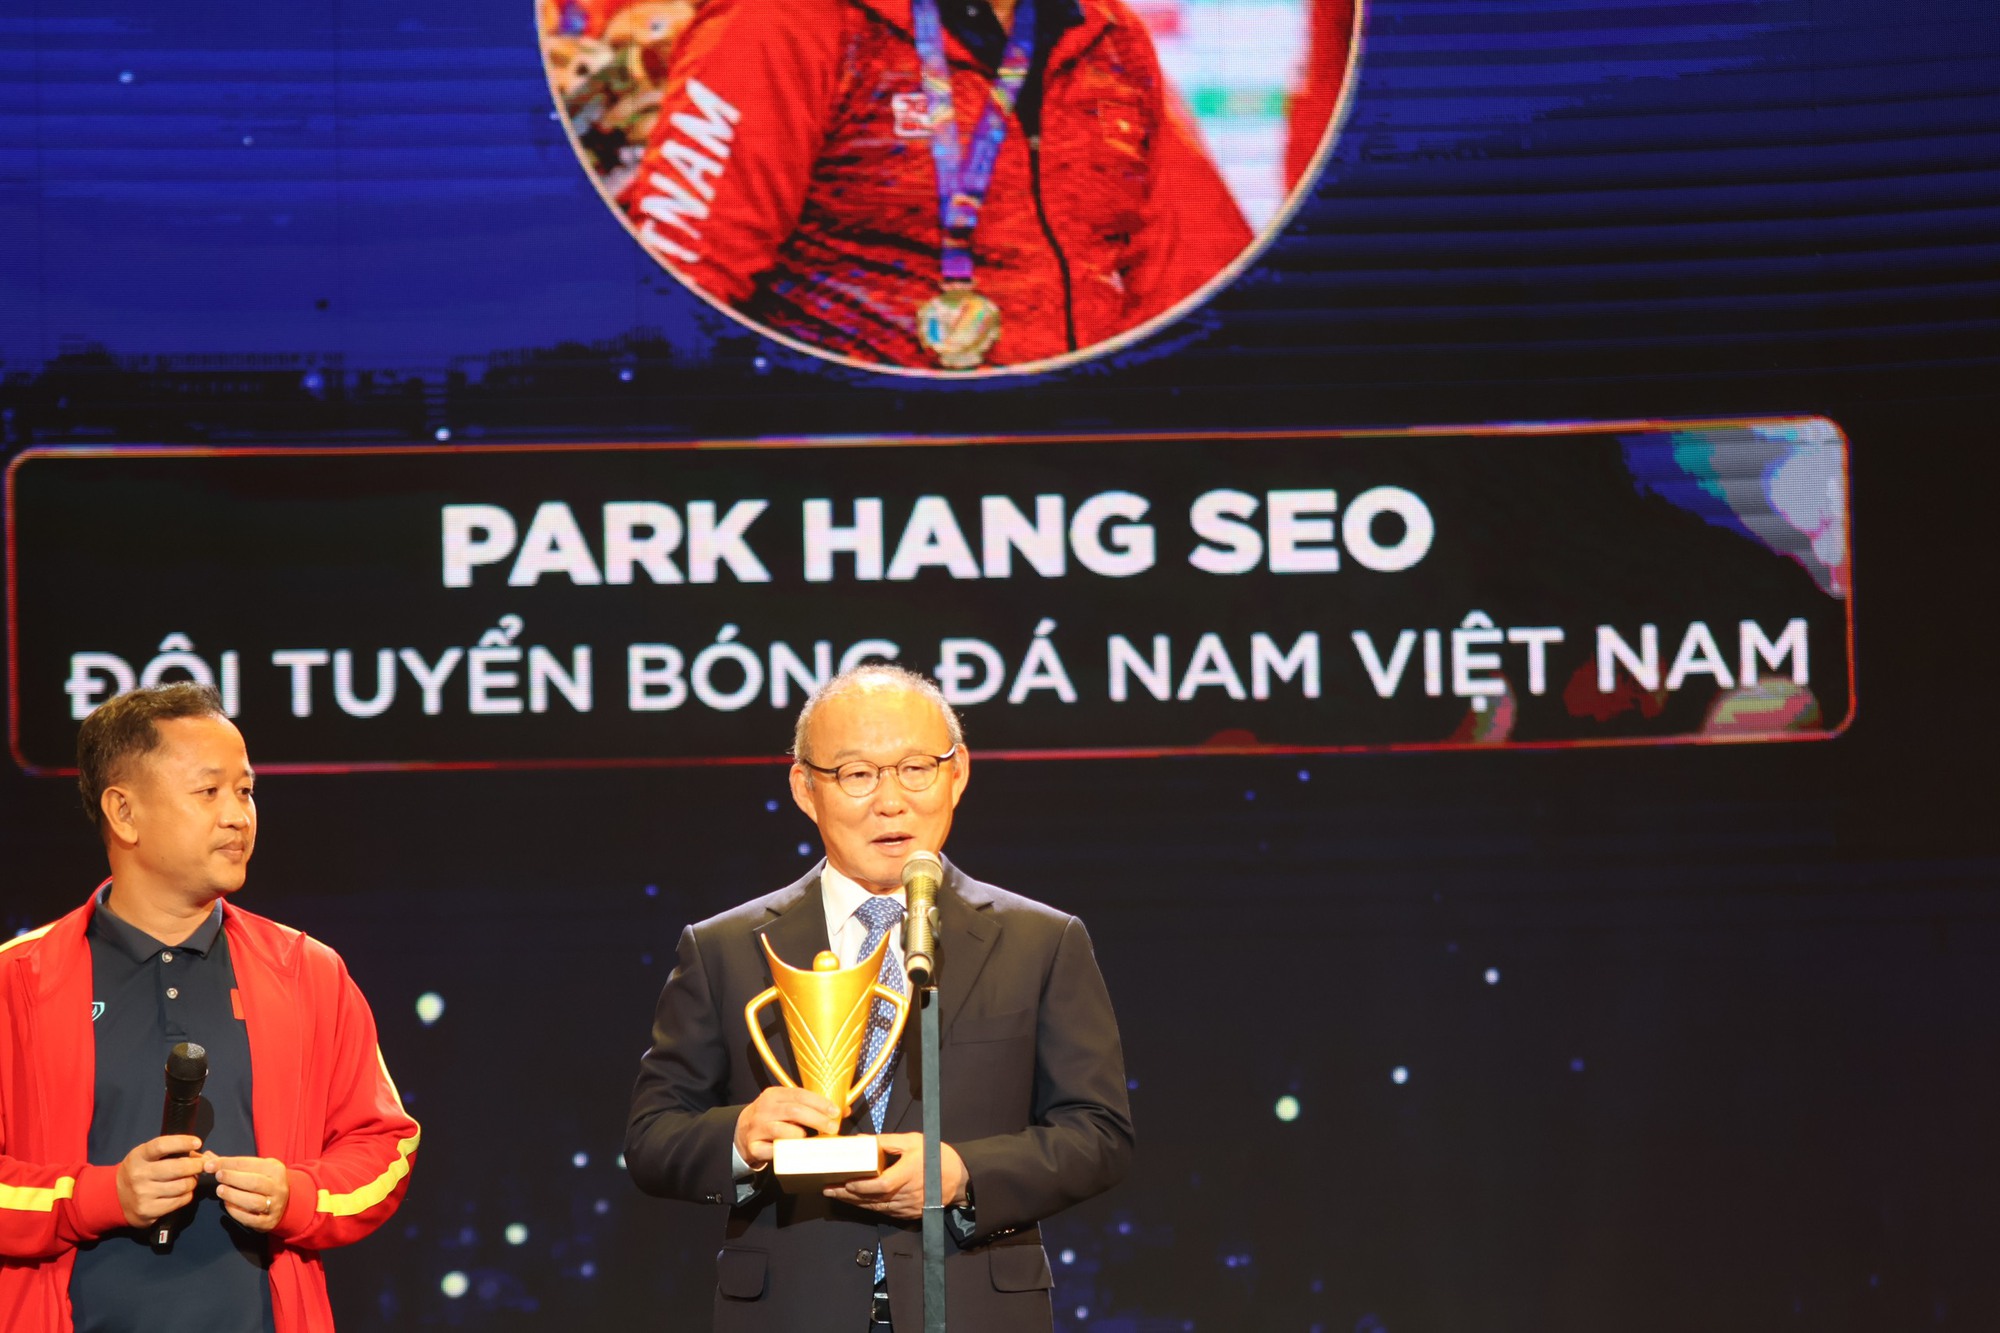 HLV Park Hang-seo tuyên bố &quot;điều cuối cùng&quot; khi được tôn vinh tại Gala Cúp Chiến Thắng 2022 - Ảnh 2.